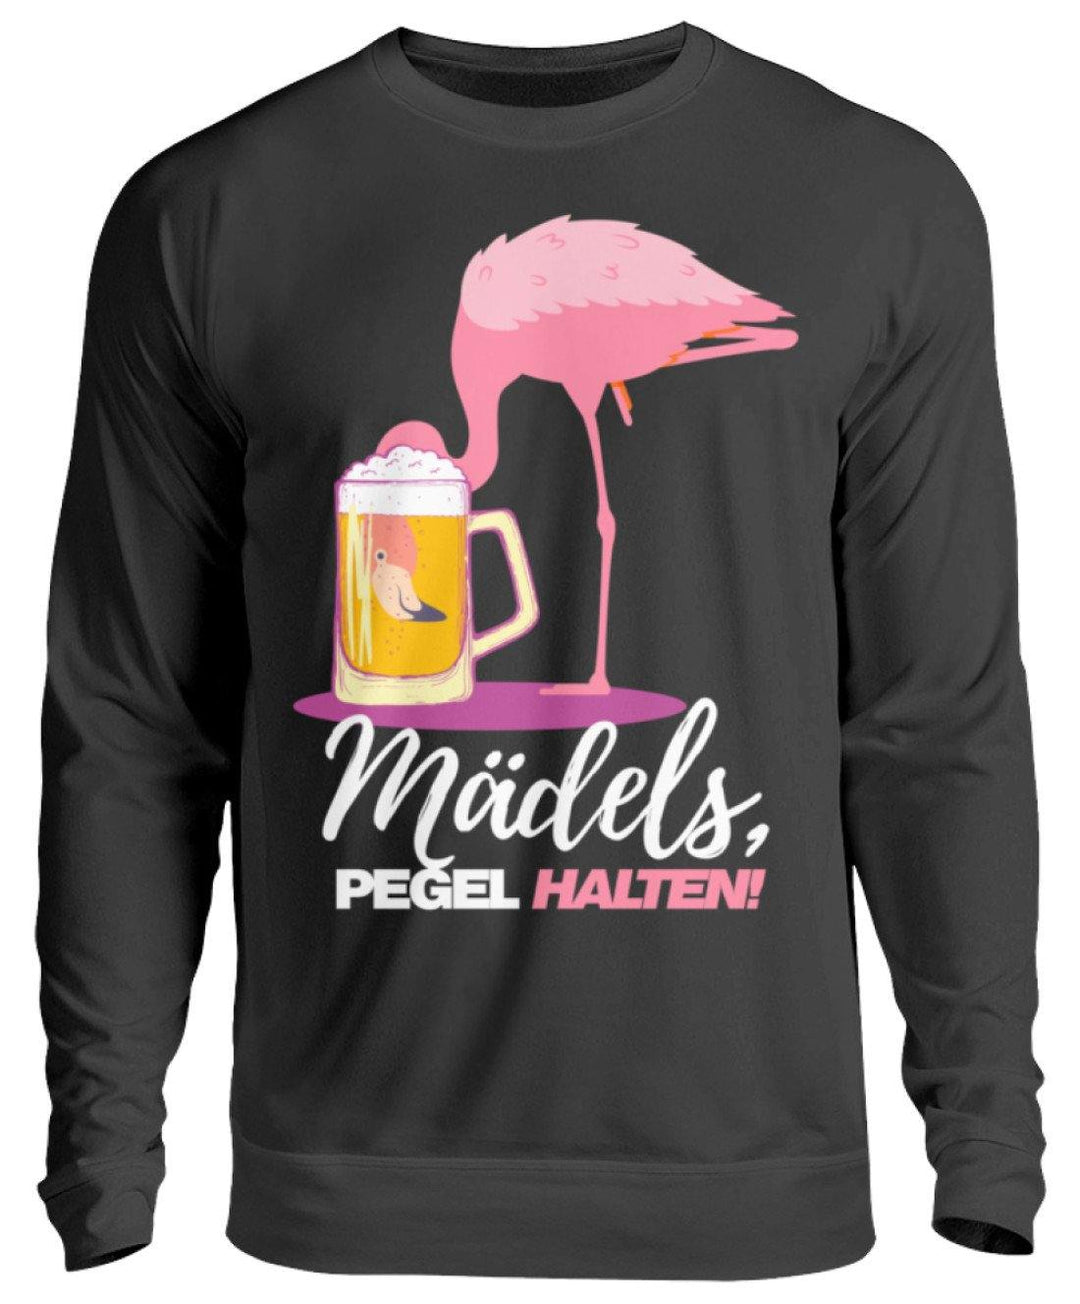 Mädels, Pegel halte - Flamingo  - Unisex Pullover - Words on Shirts Sag es mit dem Mittelfinger Shirts Hoodies Sweatshirt Taschen Gymsack Spruch Sprüche Statement